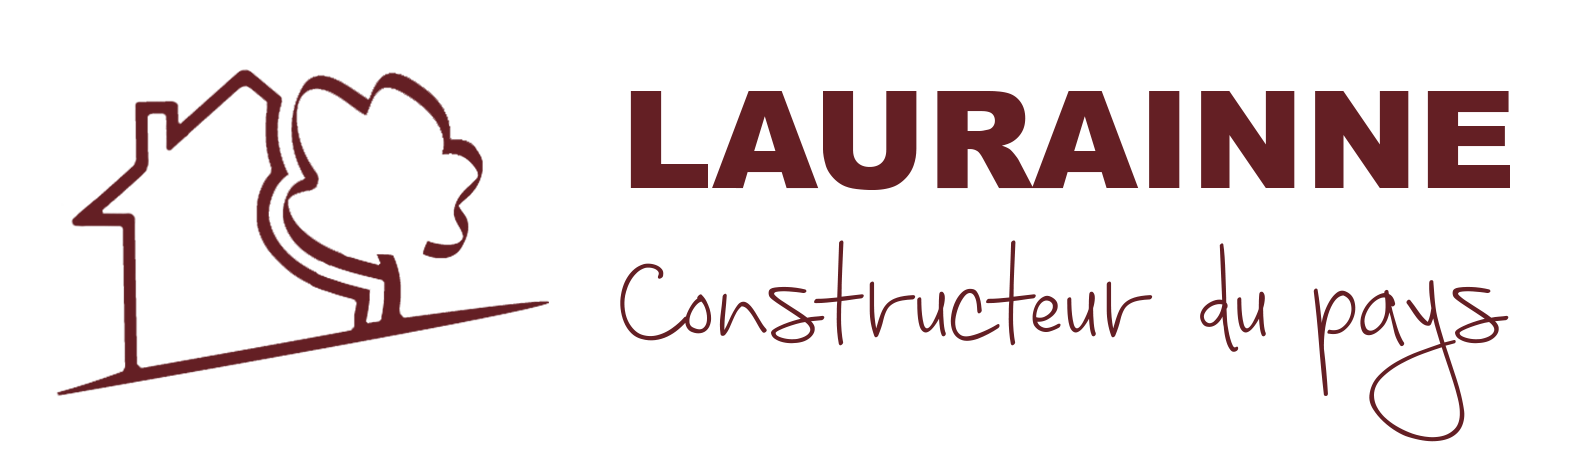 Laurainne Construction - Constructeur du pays | Samoëns, France